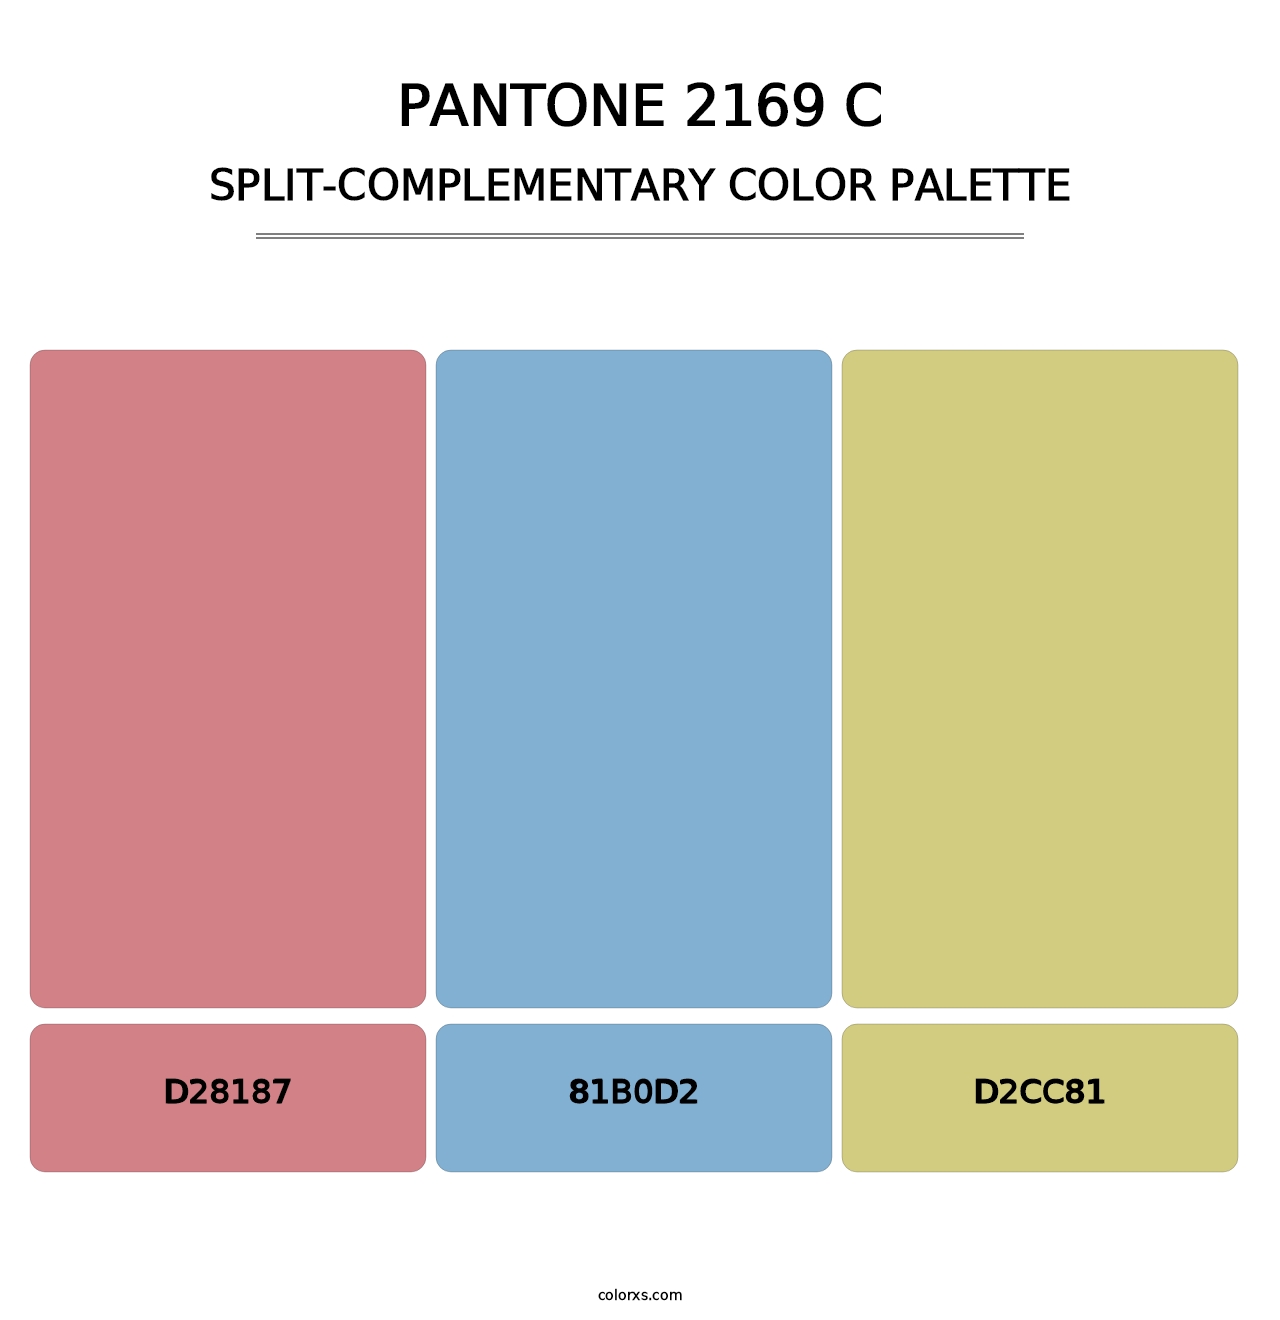 PANTONE 2169 C - Split-Complementary Color Palette